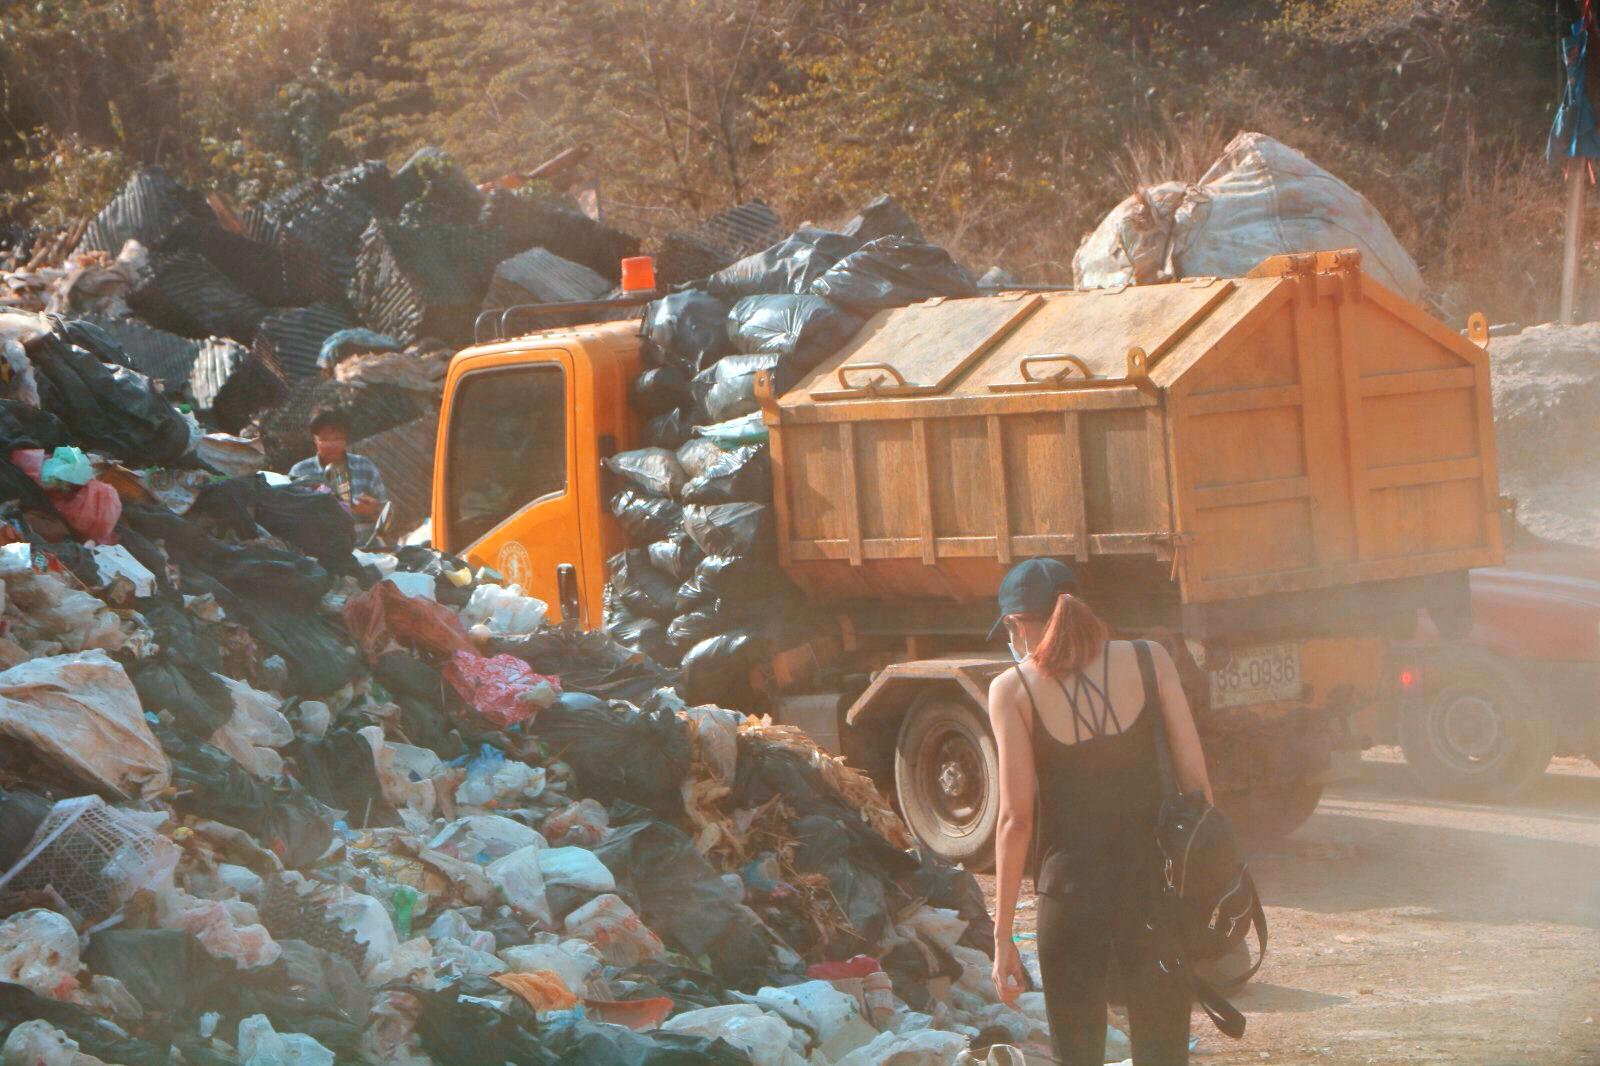 Exploring the landfill. Photo: Ajith Srinivasan/ Coconuts Media